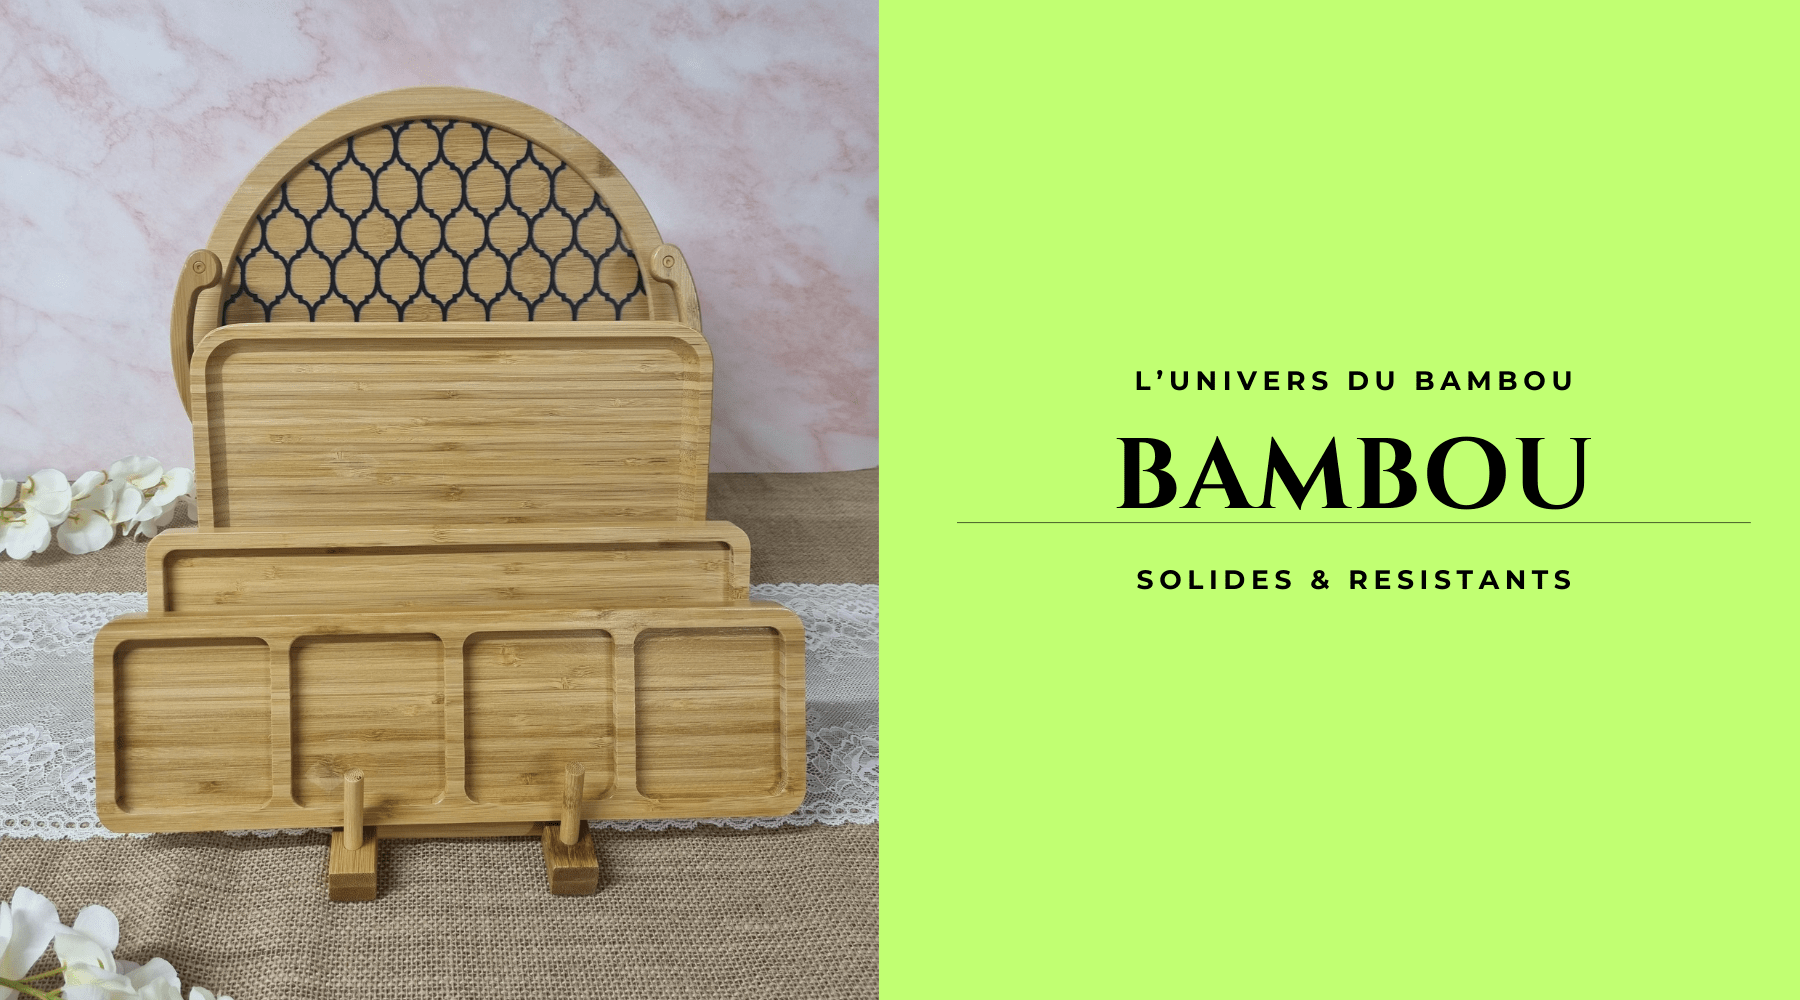 Découvrez notre univers bambou avec différents modèles d'assiettes, plateaux ...